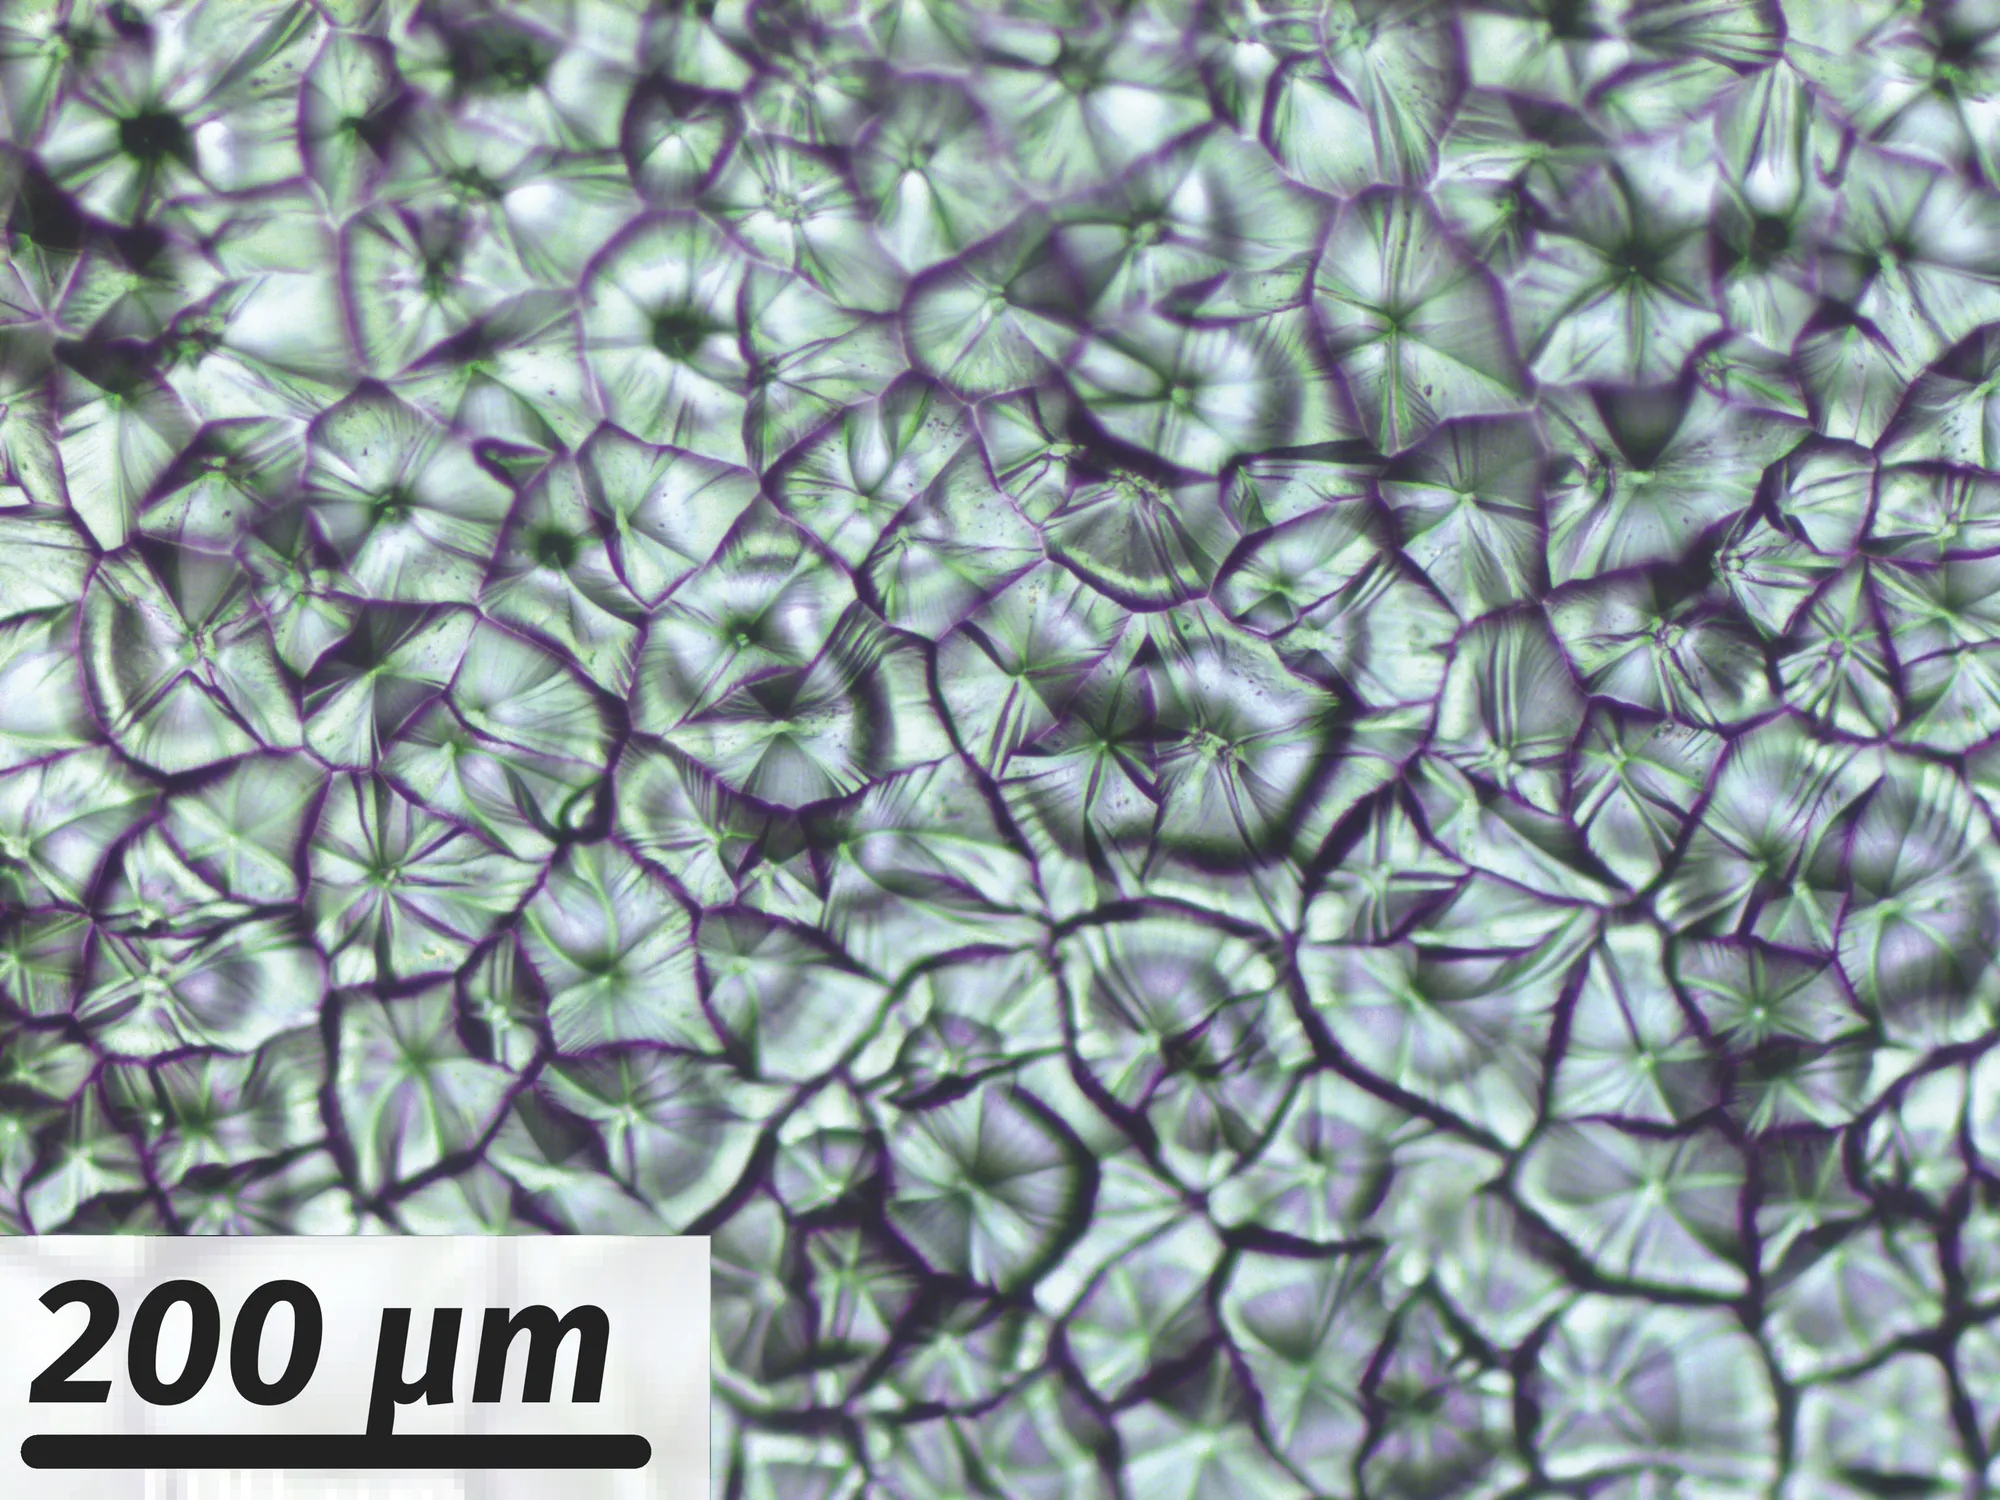 Micrographie de cristaux de pérovskite